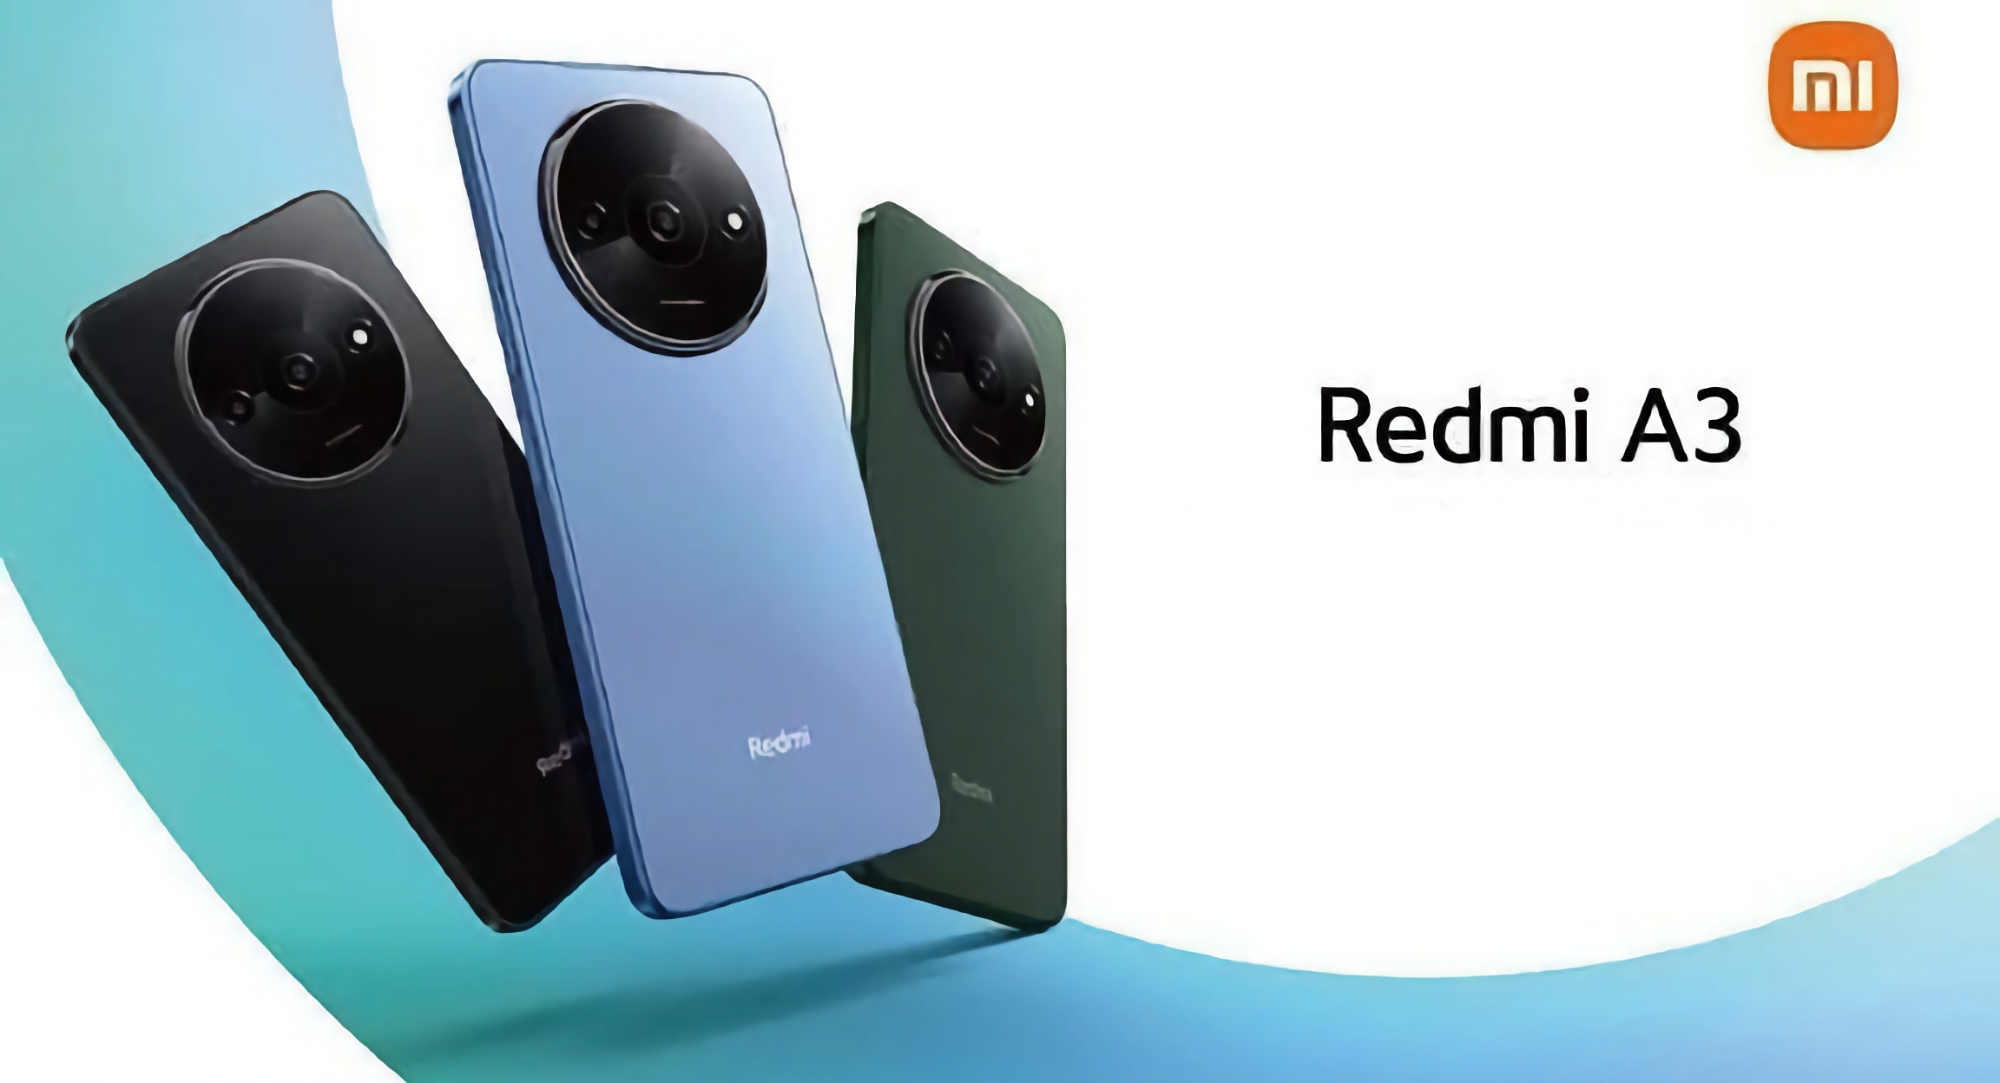 Xiaomi se prépare à sortir le Redmi A3 avec une puce MediaTek, un écran LCD 90Hz et une batterie de 5000 mAh.